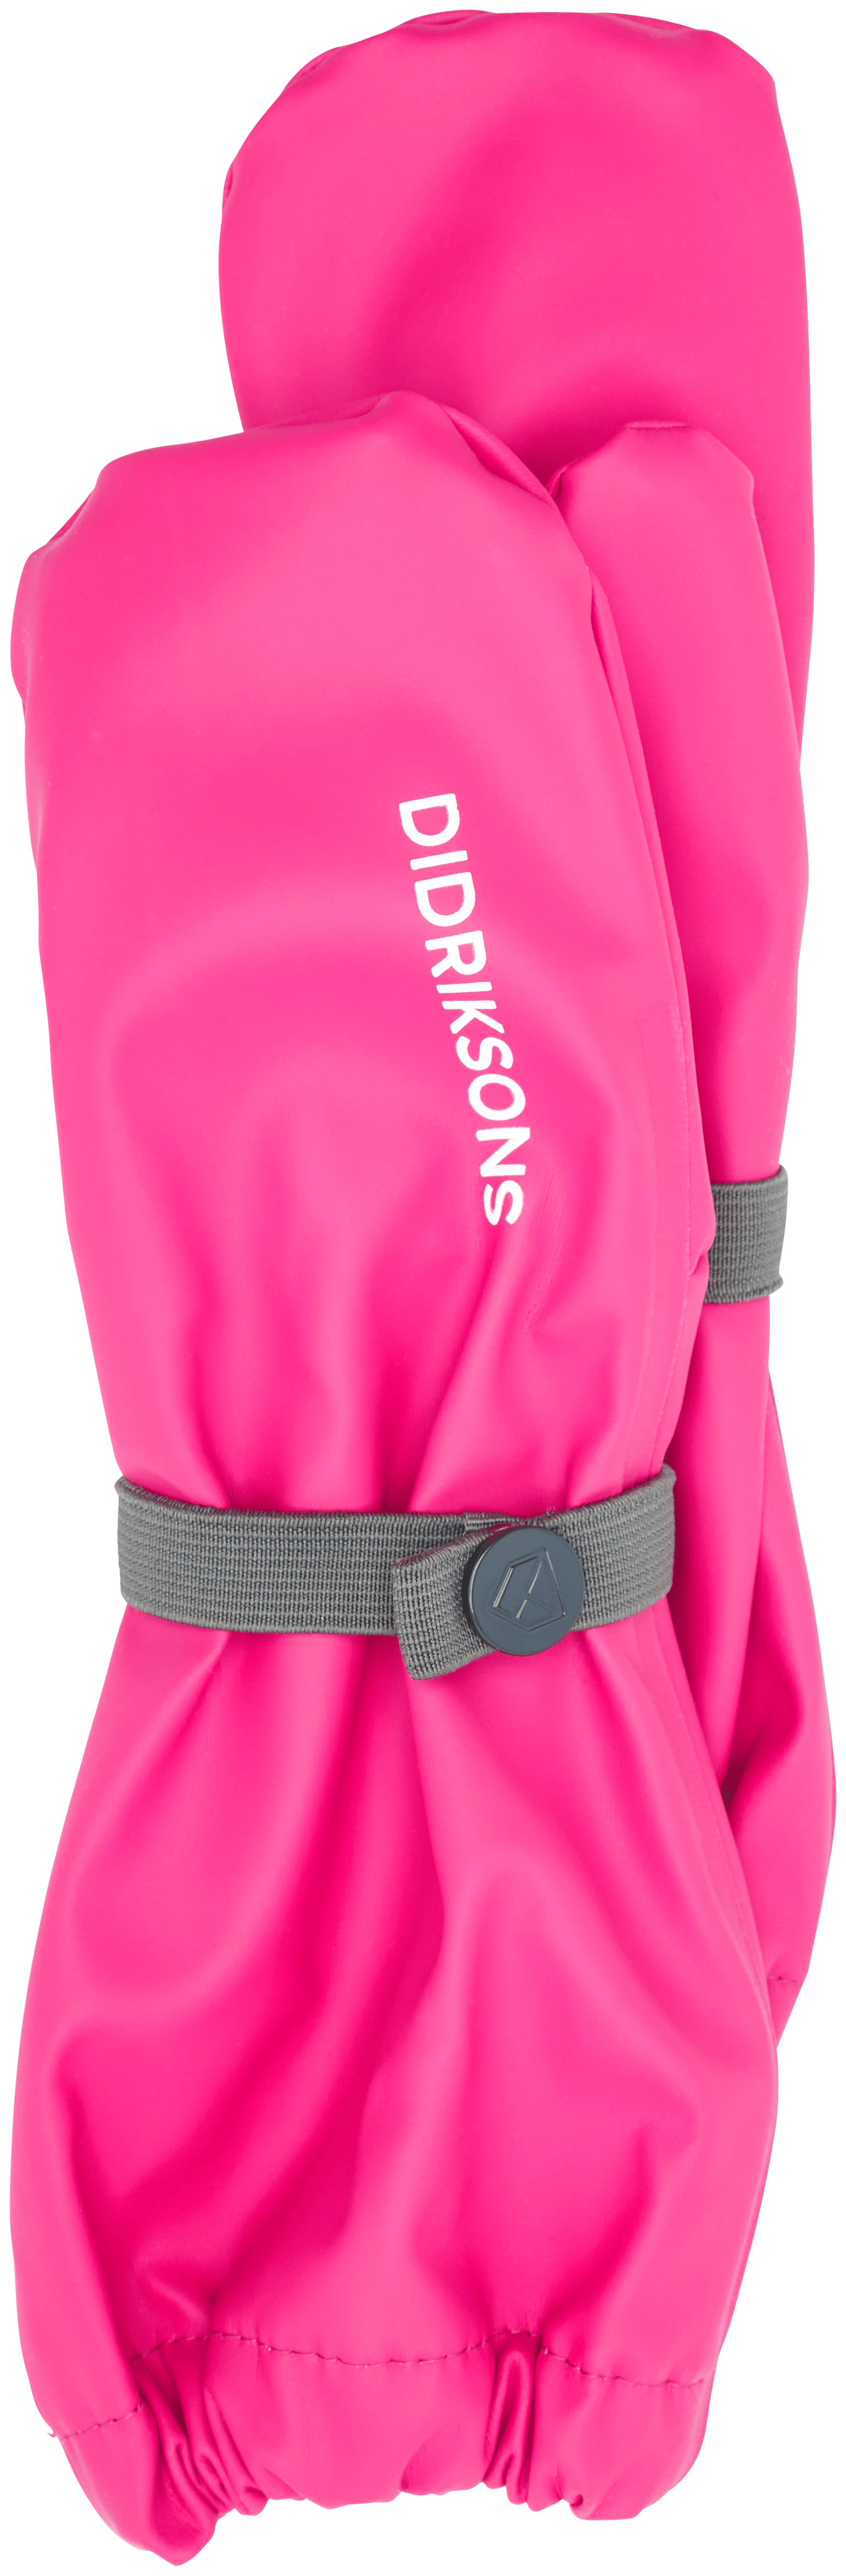 Didriksons Kids' Glove Classics Plastic Pink